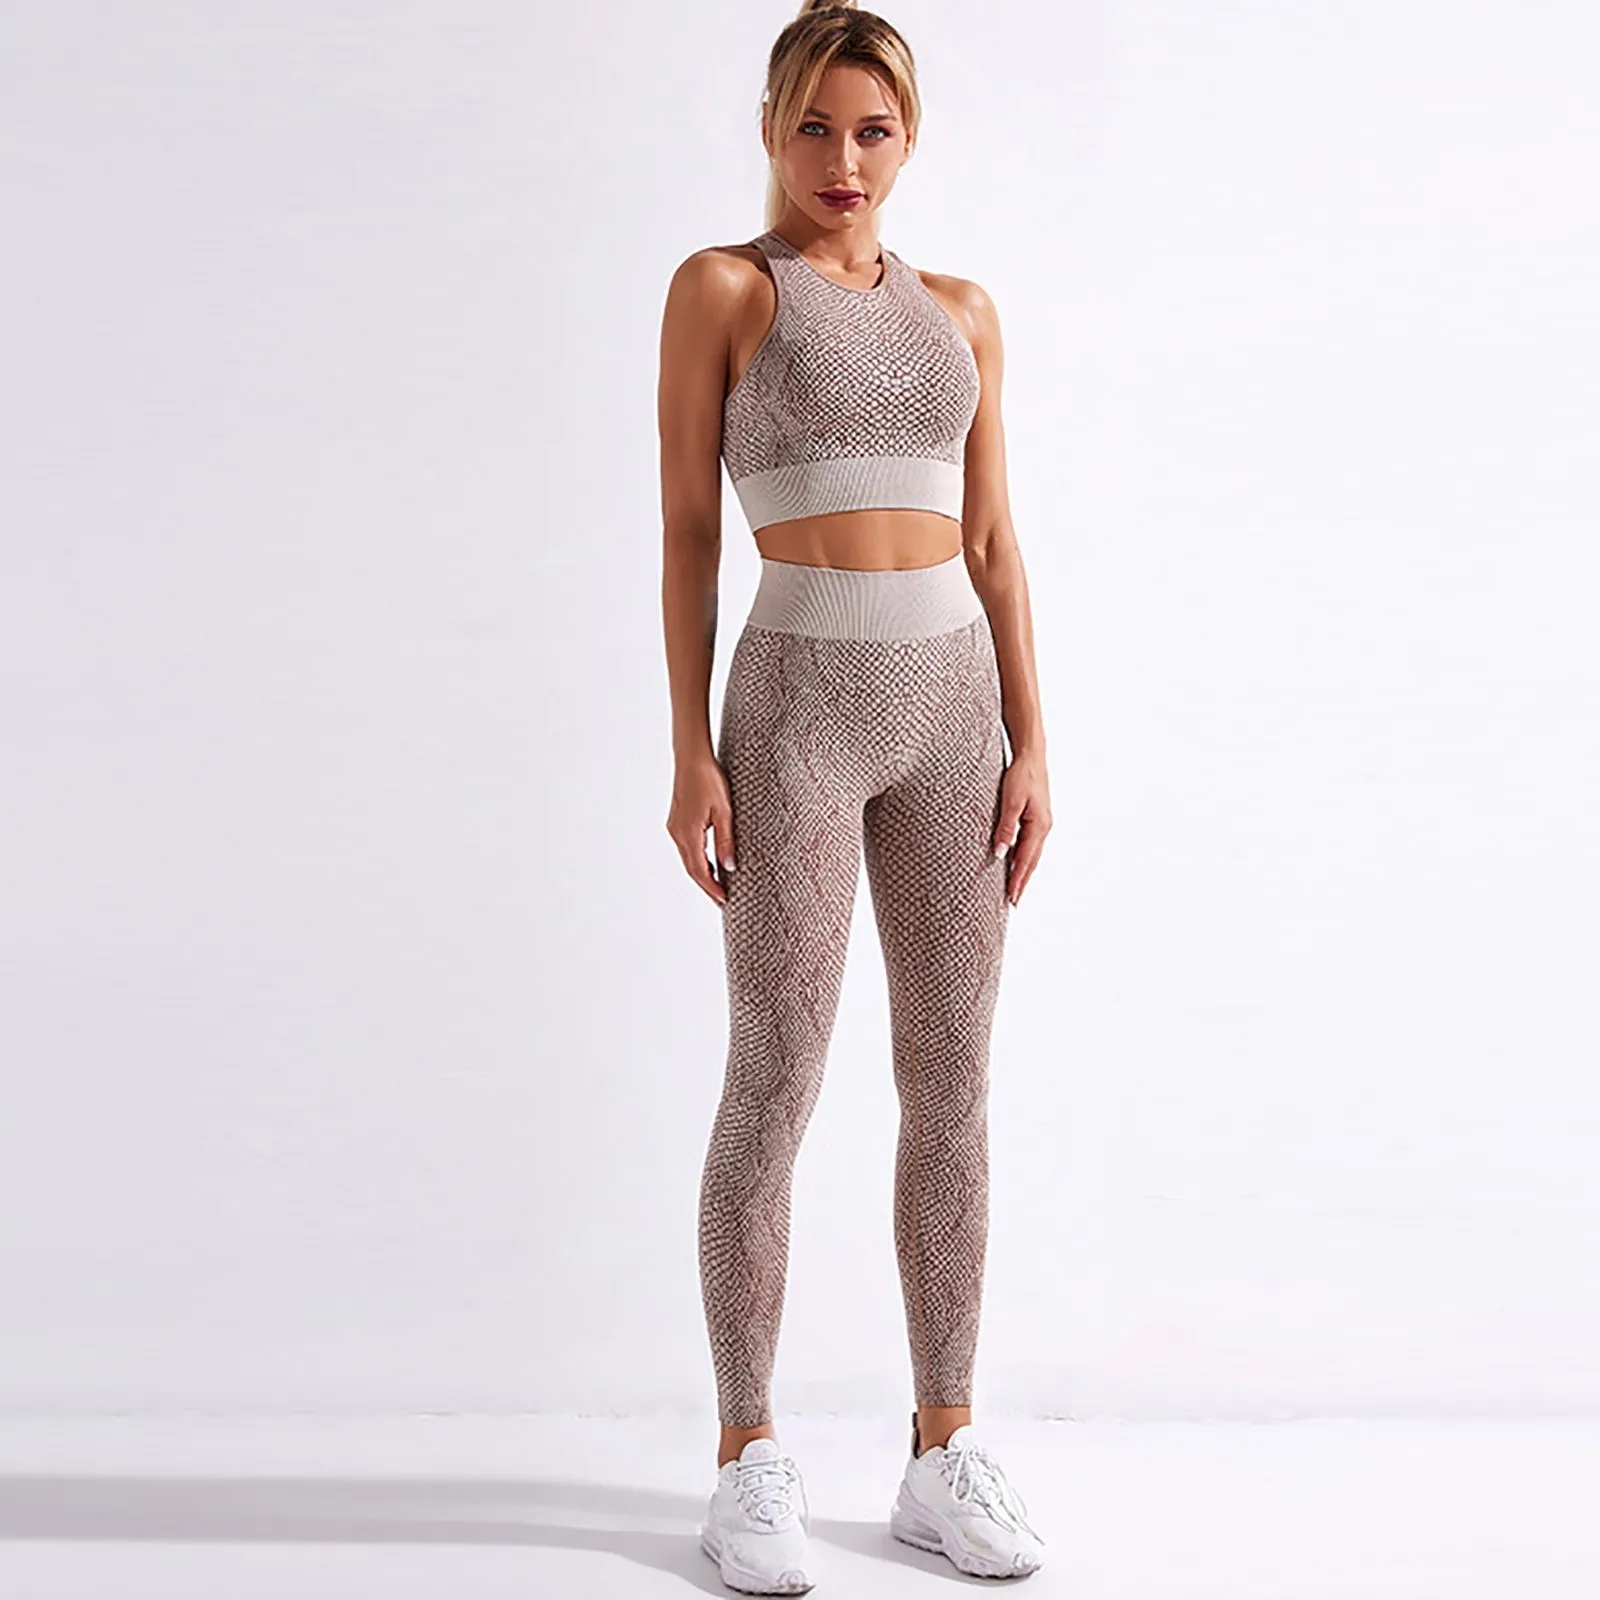 GRT Fitness H17f287d0085e4ae898e4066c6fab0740M Seamless Women Yoga Set Workout Shirts Sport Pants Gym Clothing Short Crop Top High Waist Running Leggings Sports Set 2021  